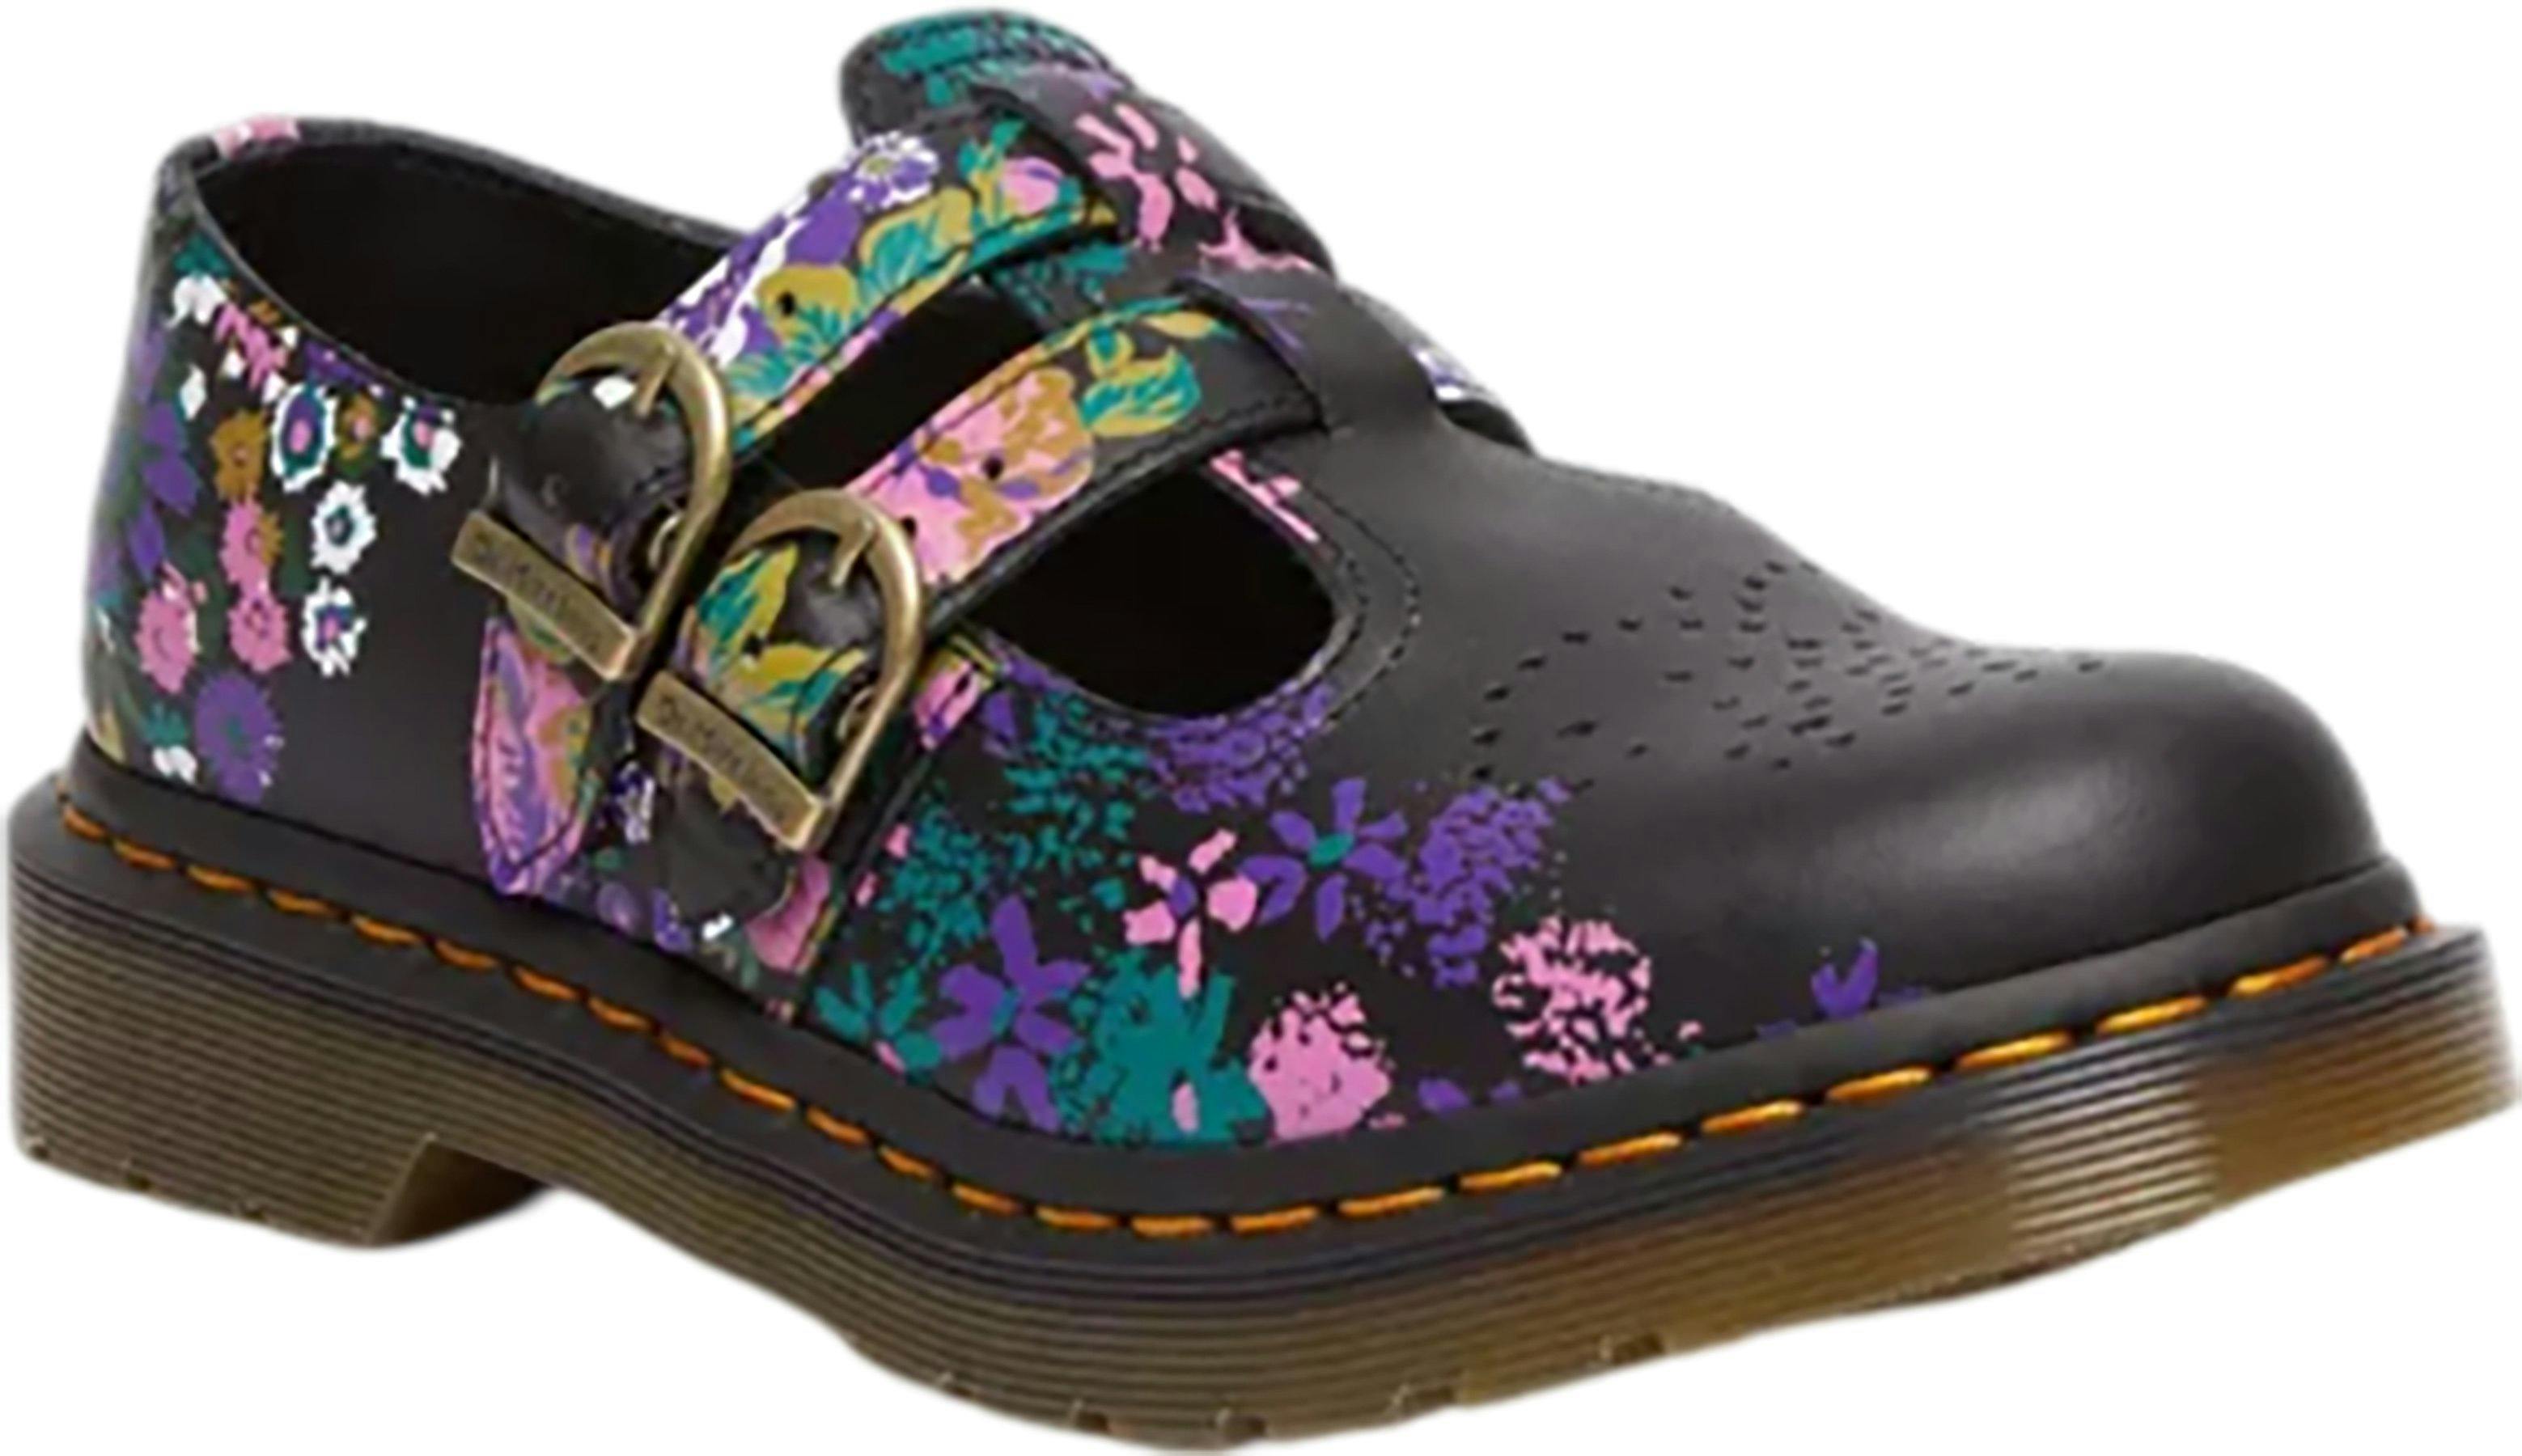 Image de produit pour Chaussures en cuir floral vintage Mary Jane 8065 - Femme